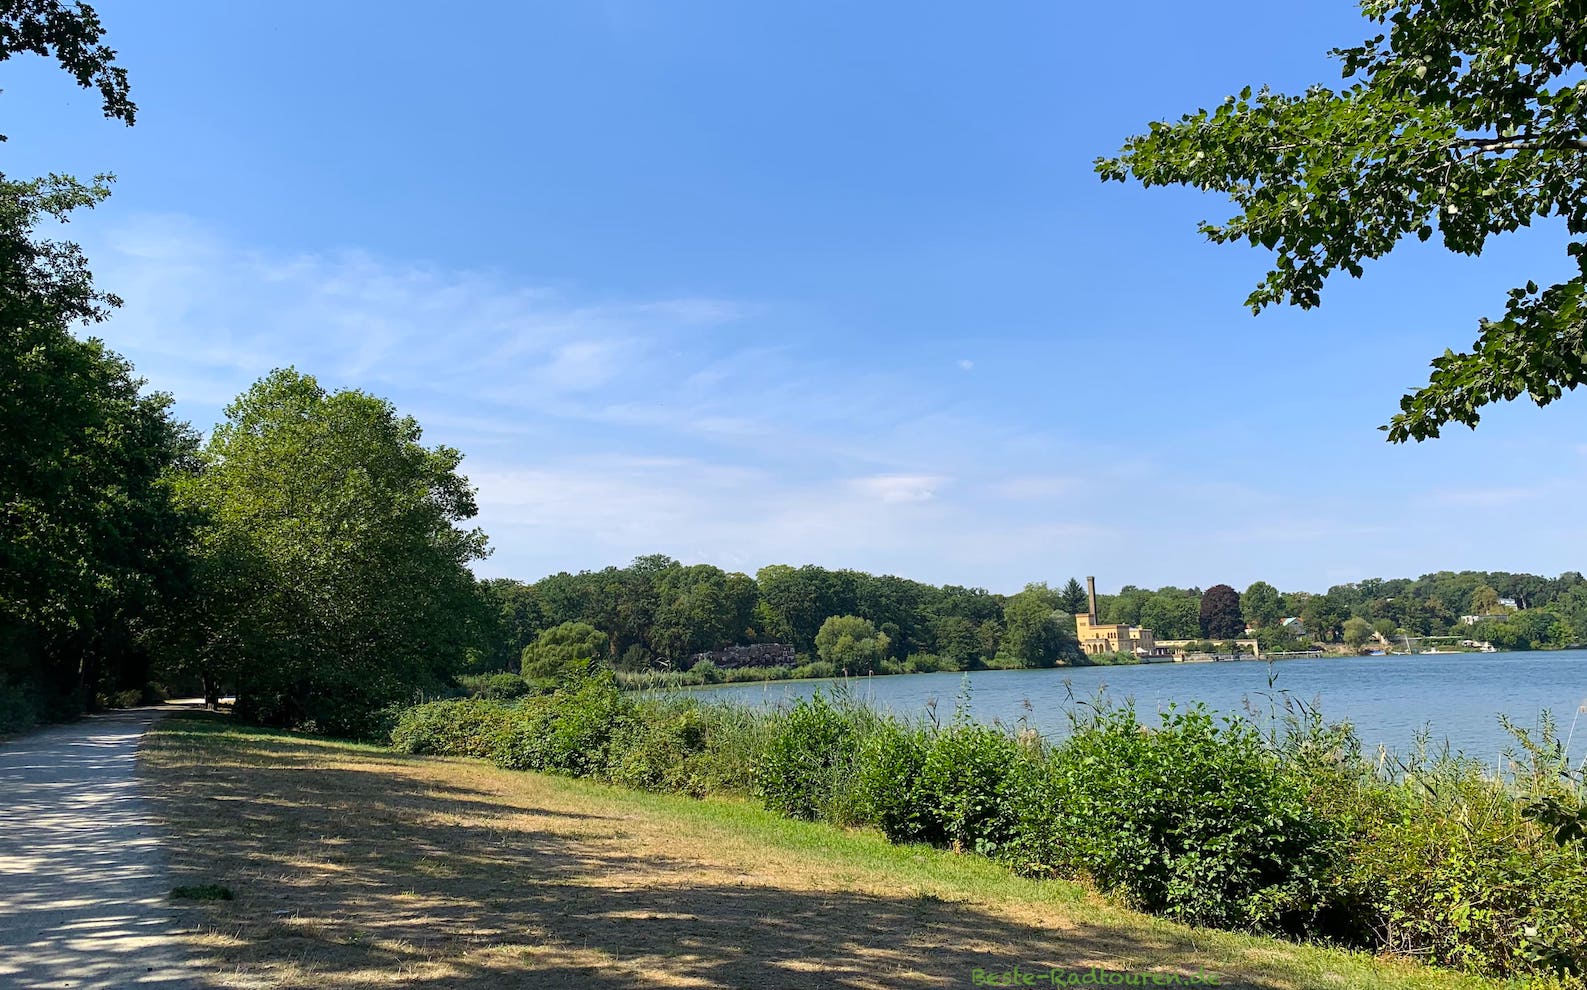 Foto vom Radweg im Park Neuer Garten aus: Heiliger See, Alte Meierei